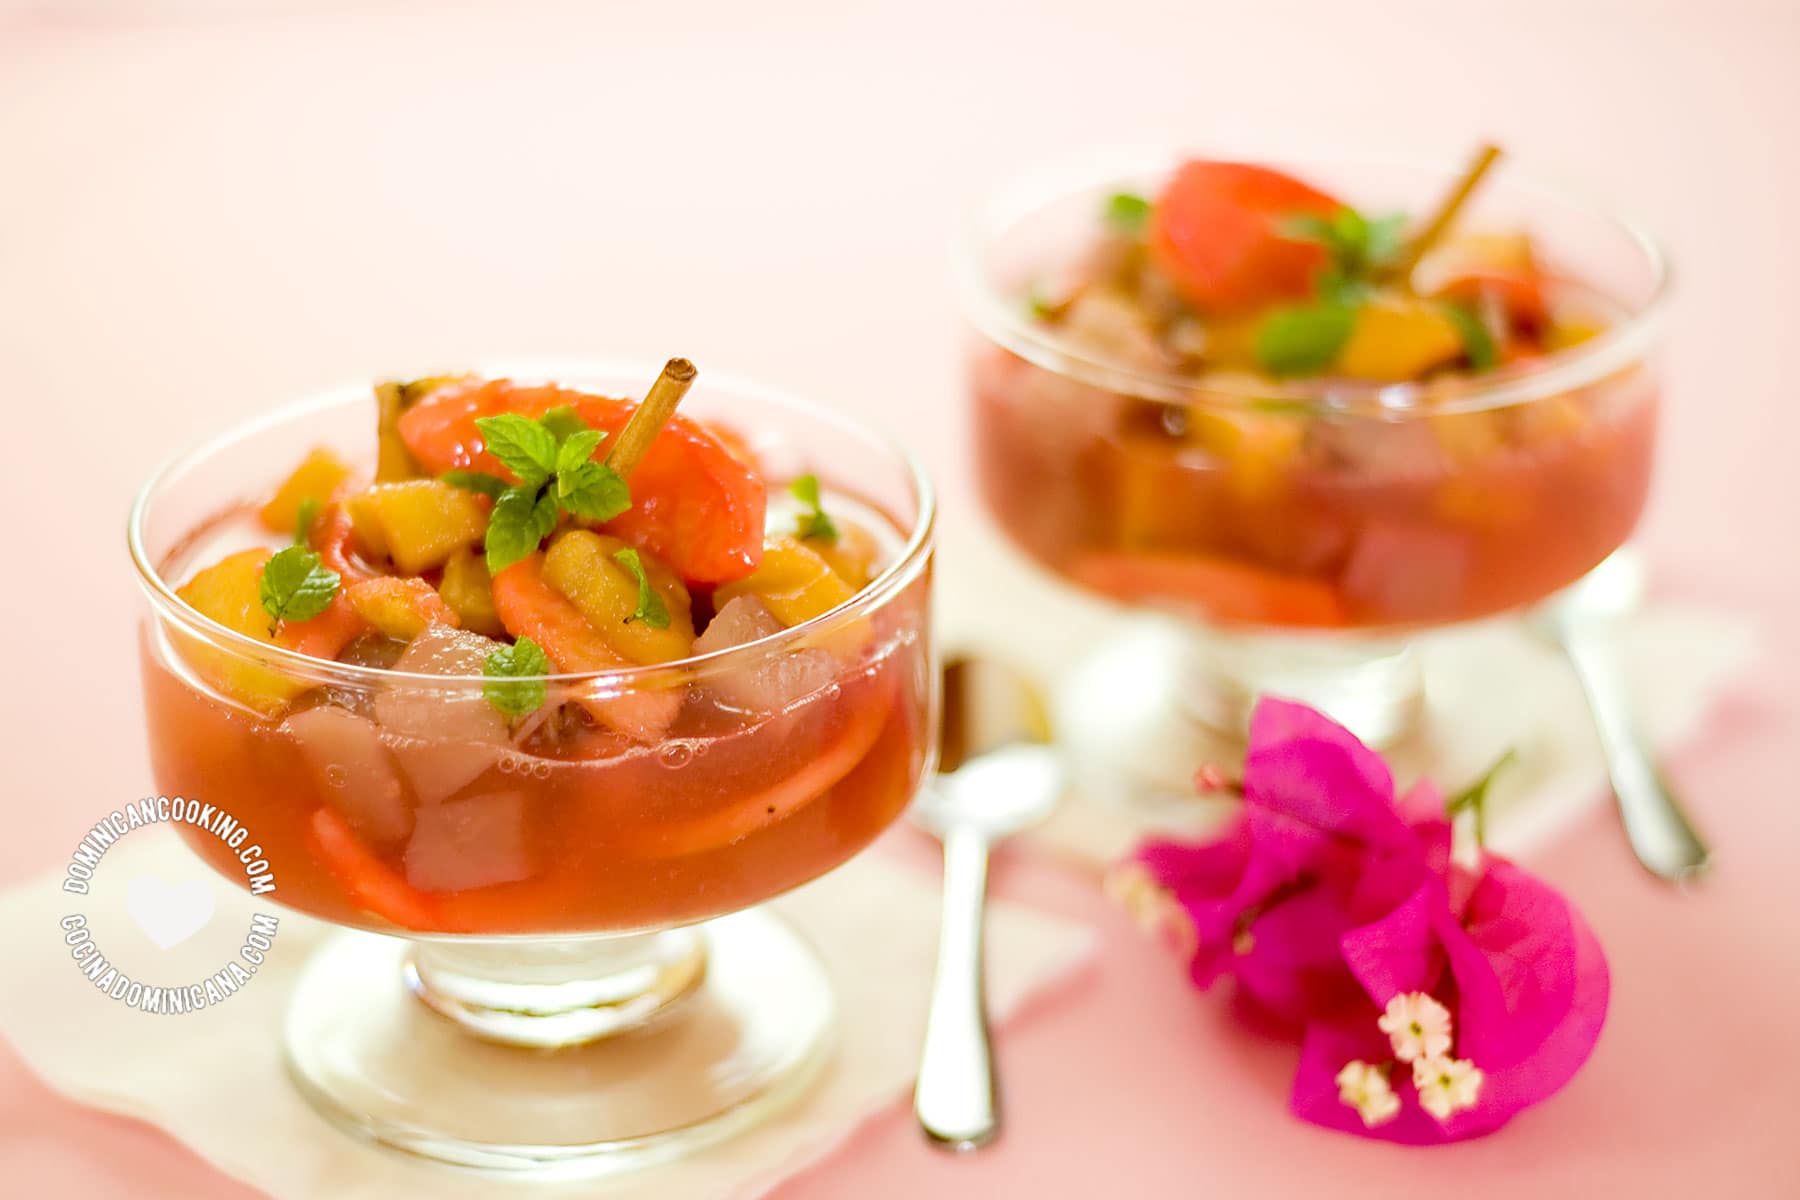 Mala rabia (guava and plantain dessert).